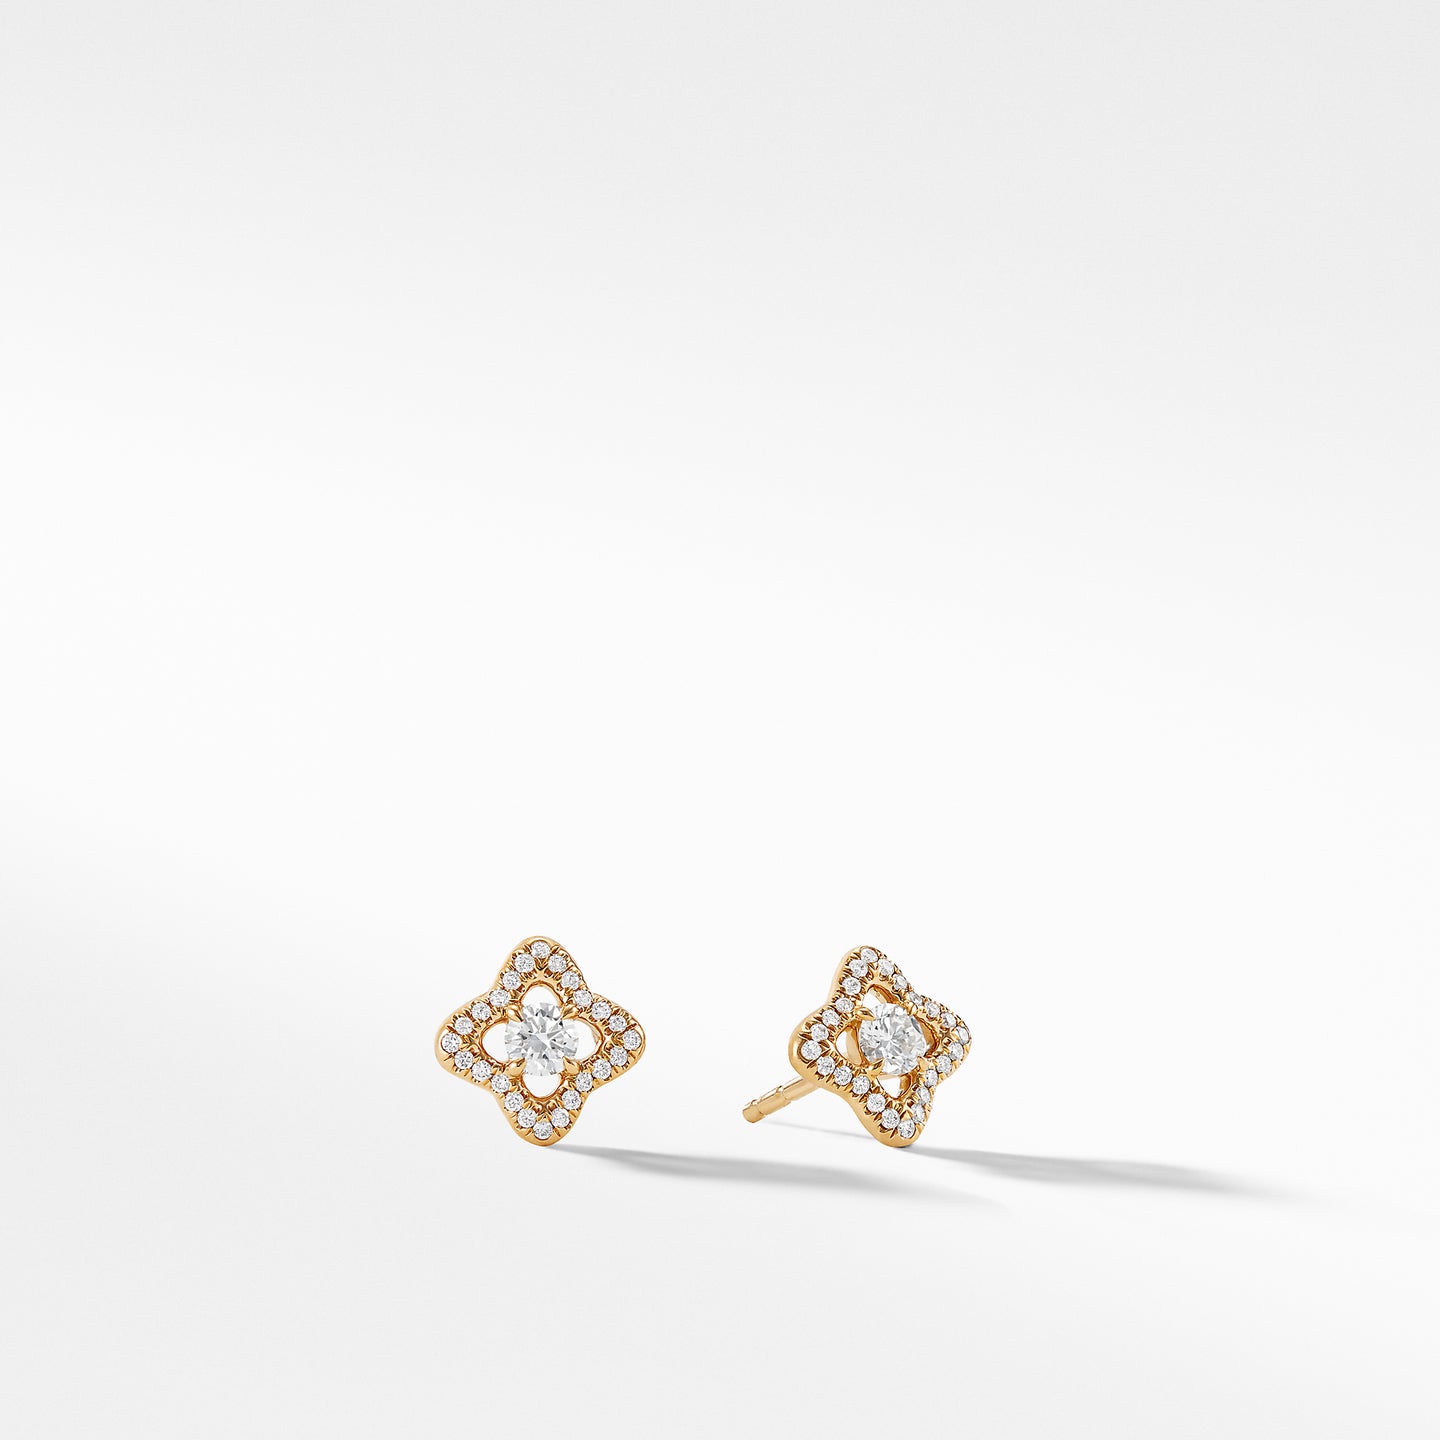 Venetian Quatrefoil Earrings with Diamonds in Gold